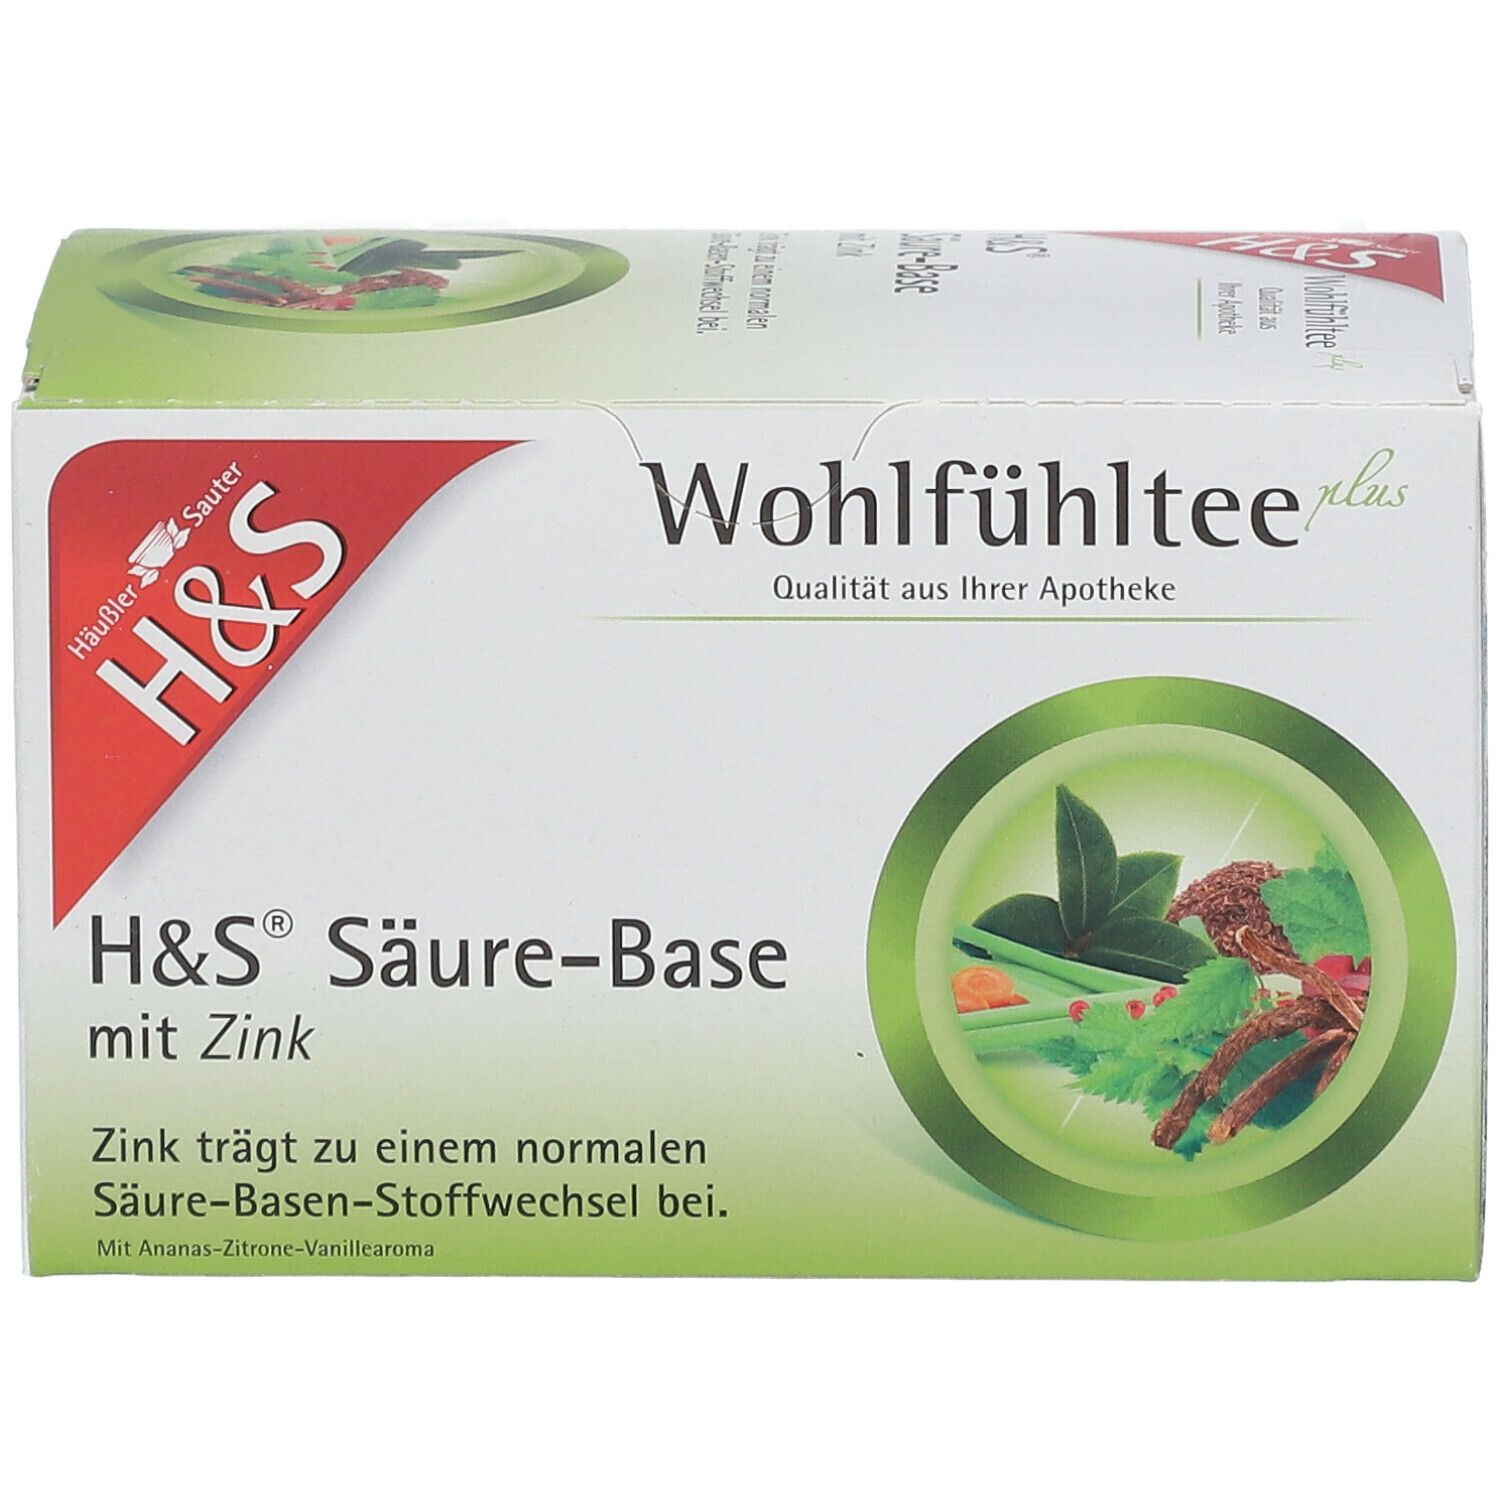 H&S® Säure-Basentee mit Zink